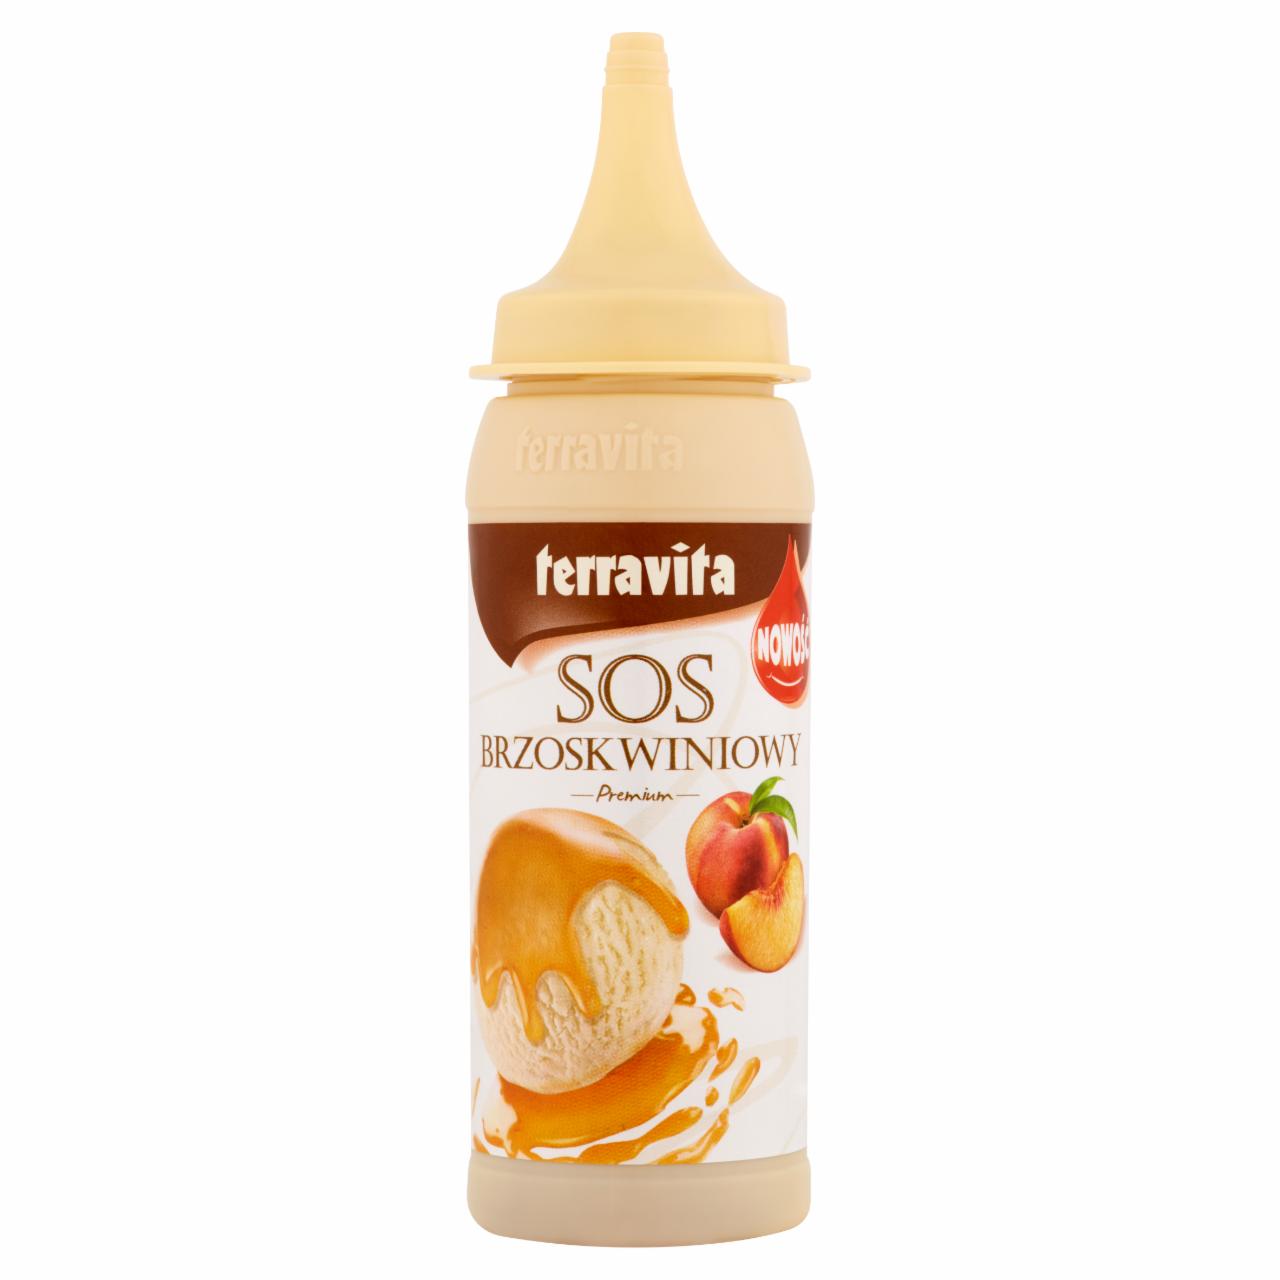 Zdjęcia - Terravita Premium Sos brzoskwiniowy 200 g